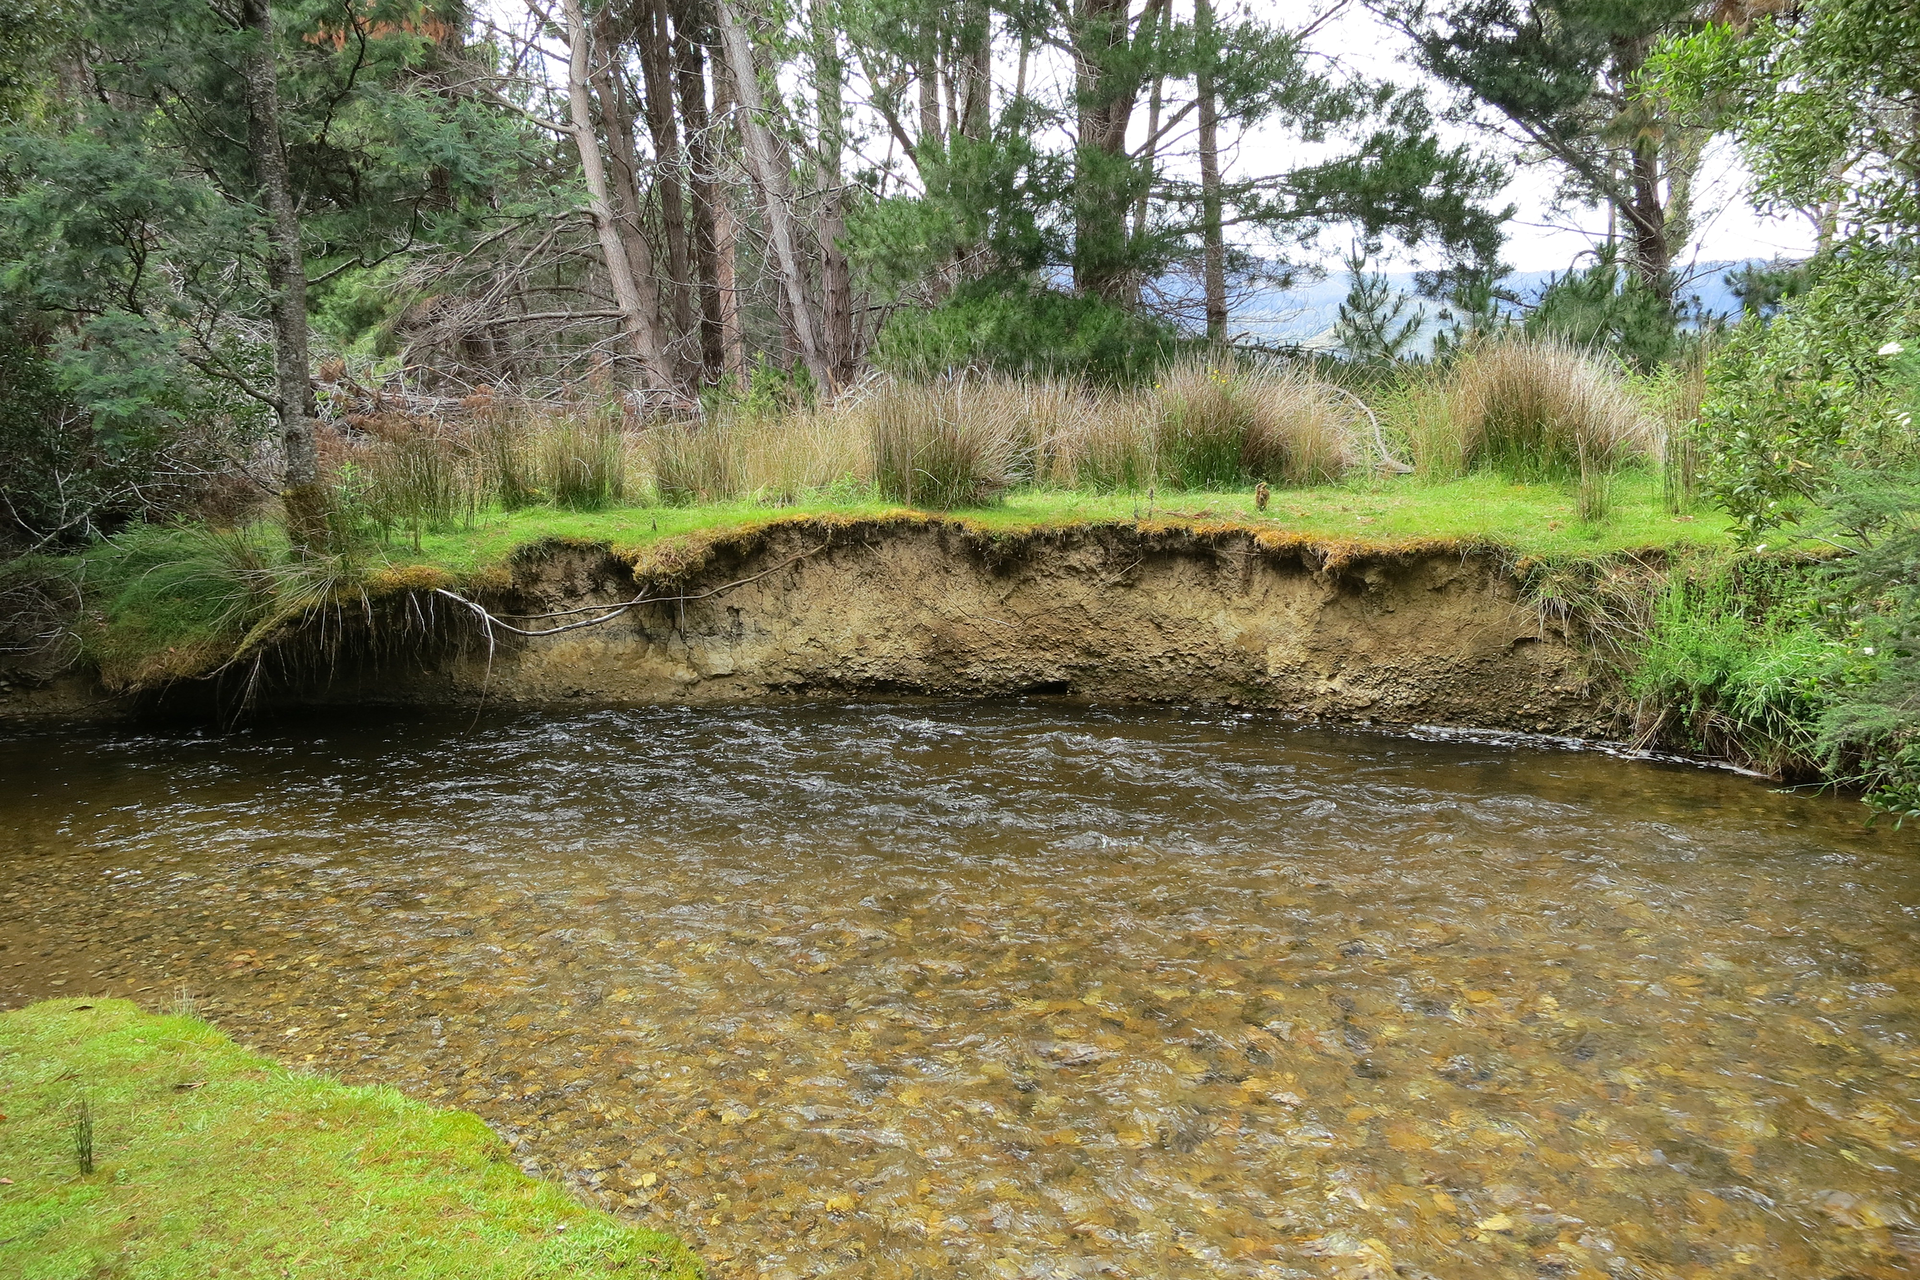 Galeria zdjęć prezentujących efekty erozji. Fotografia prezentuje zakole rzeki, powstałe na skutek podmywania brzegów przez wodę.